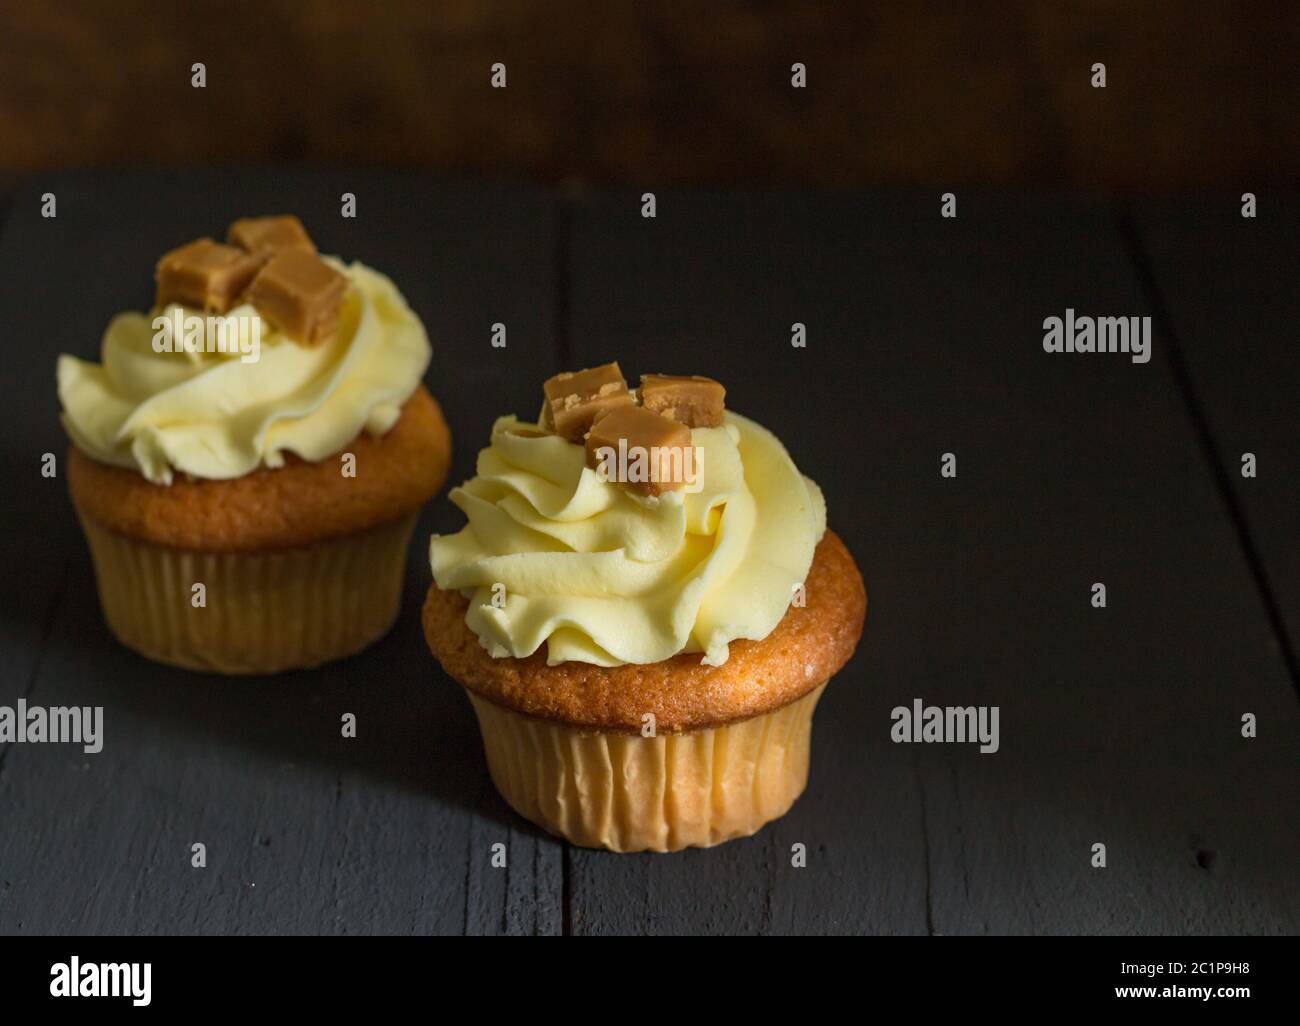 Zwei butterscotch Caramel fudge Cup Cakes auf rustikalen Schwarzer Tisch mit selektiven Fokus eingerichtet Stockfoto